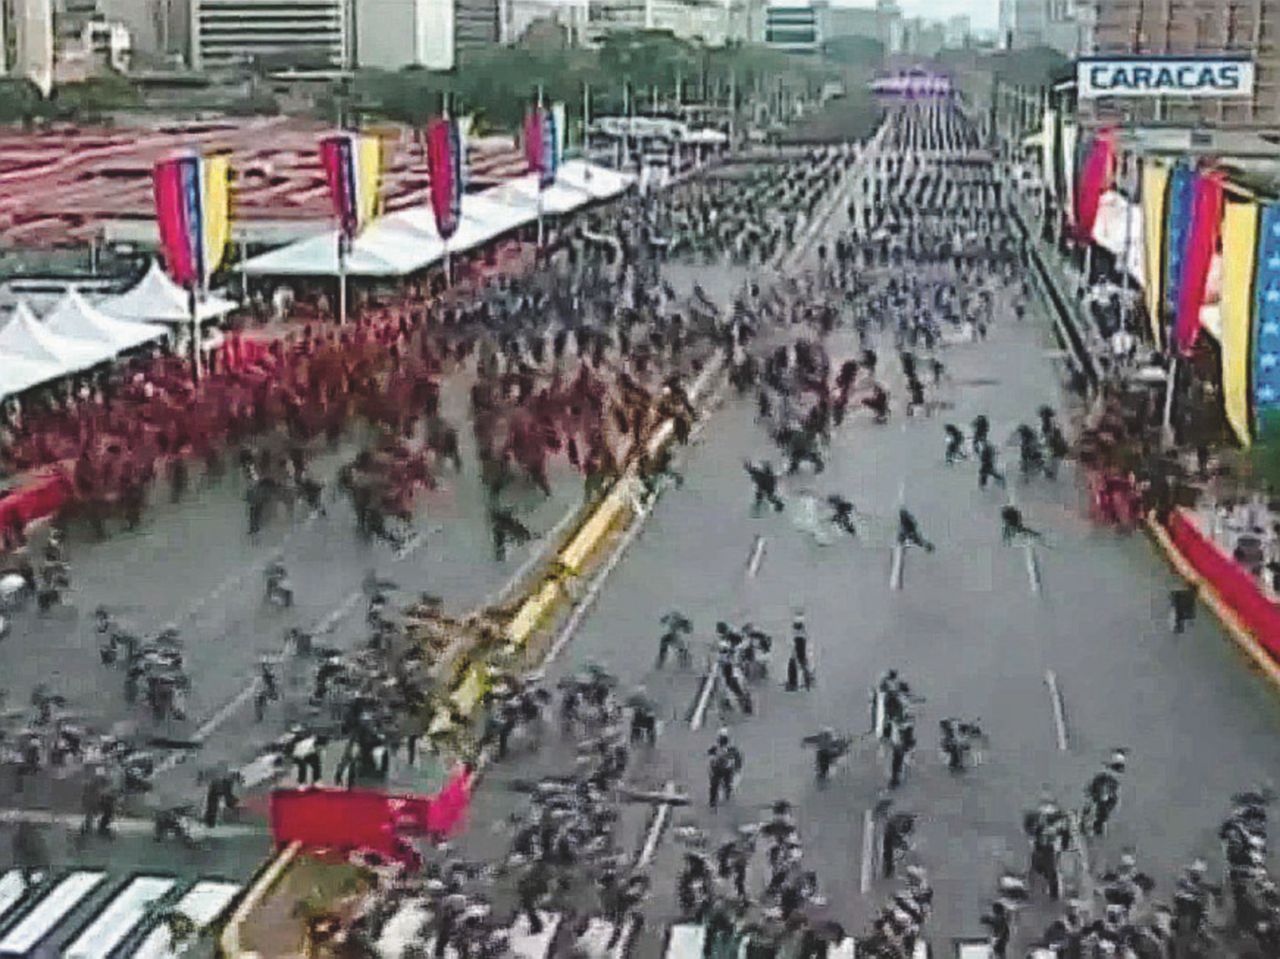 O Maduro o la resistenza. Ma con chi sta l’esercito?